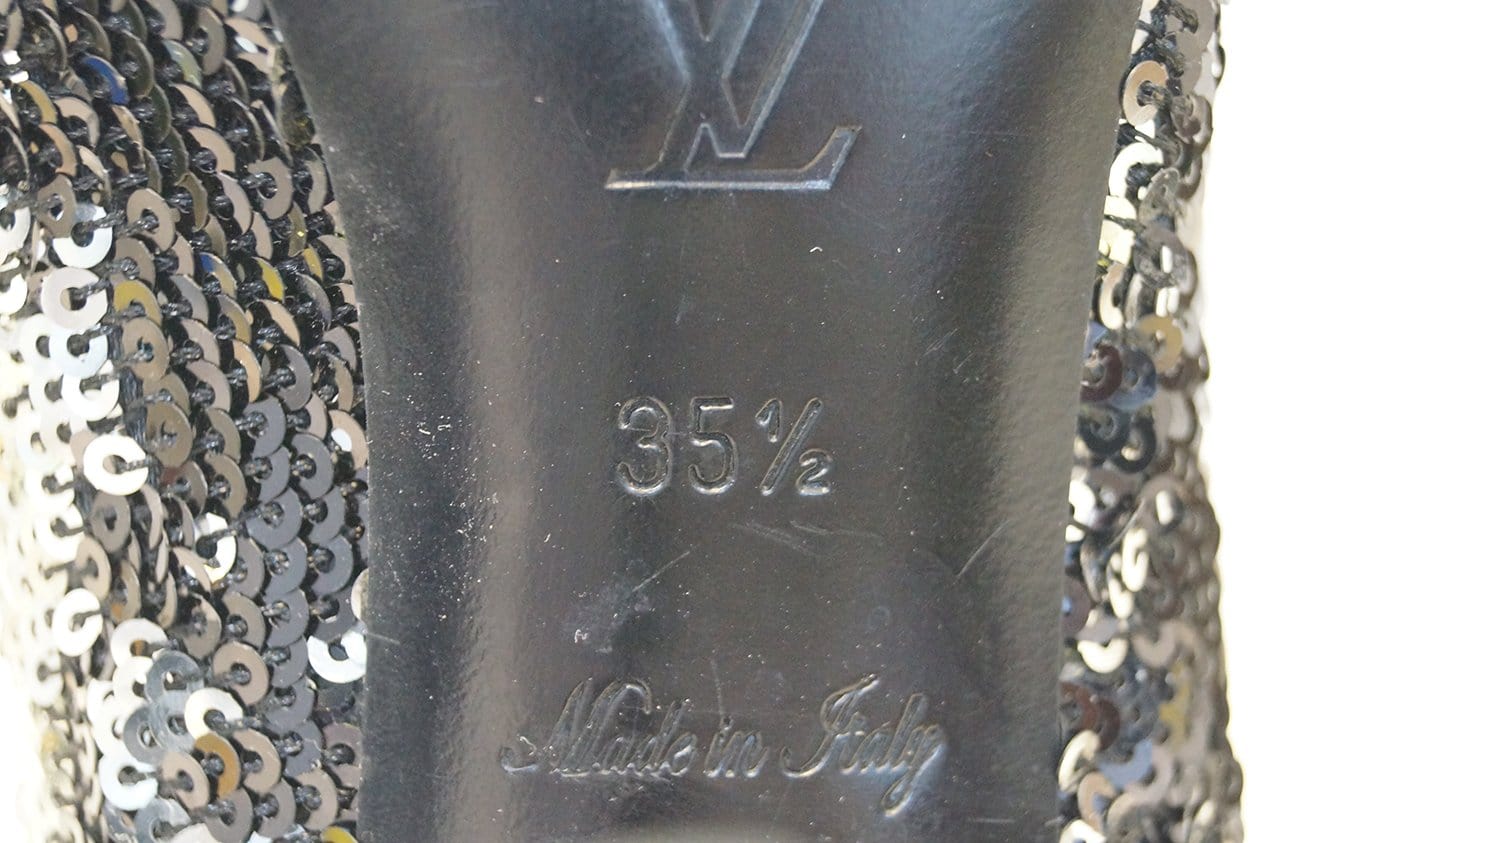 Louis Vuitton Black/Silver Sequin Liza Slingback Sandals Size 39